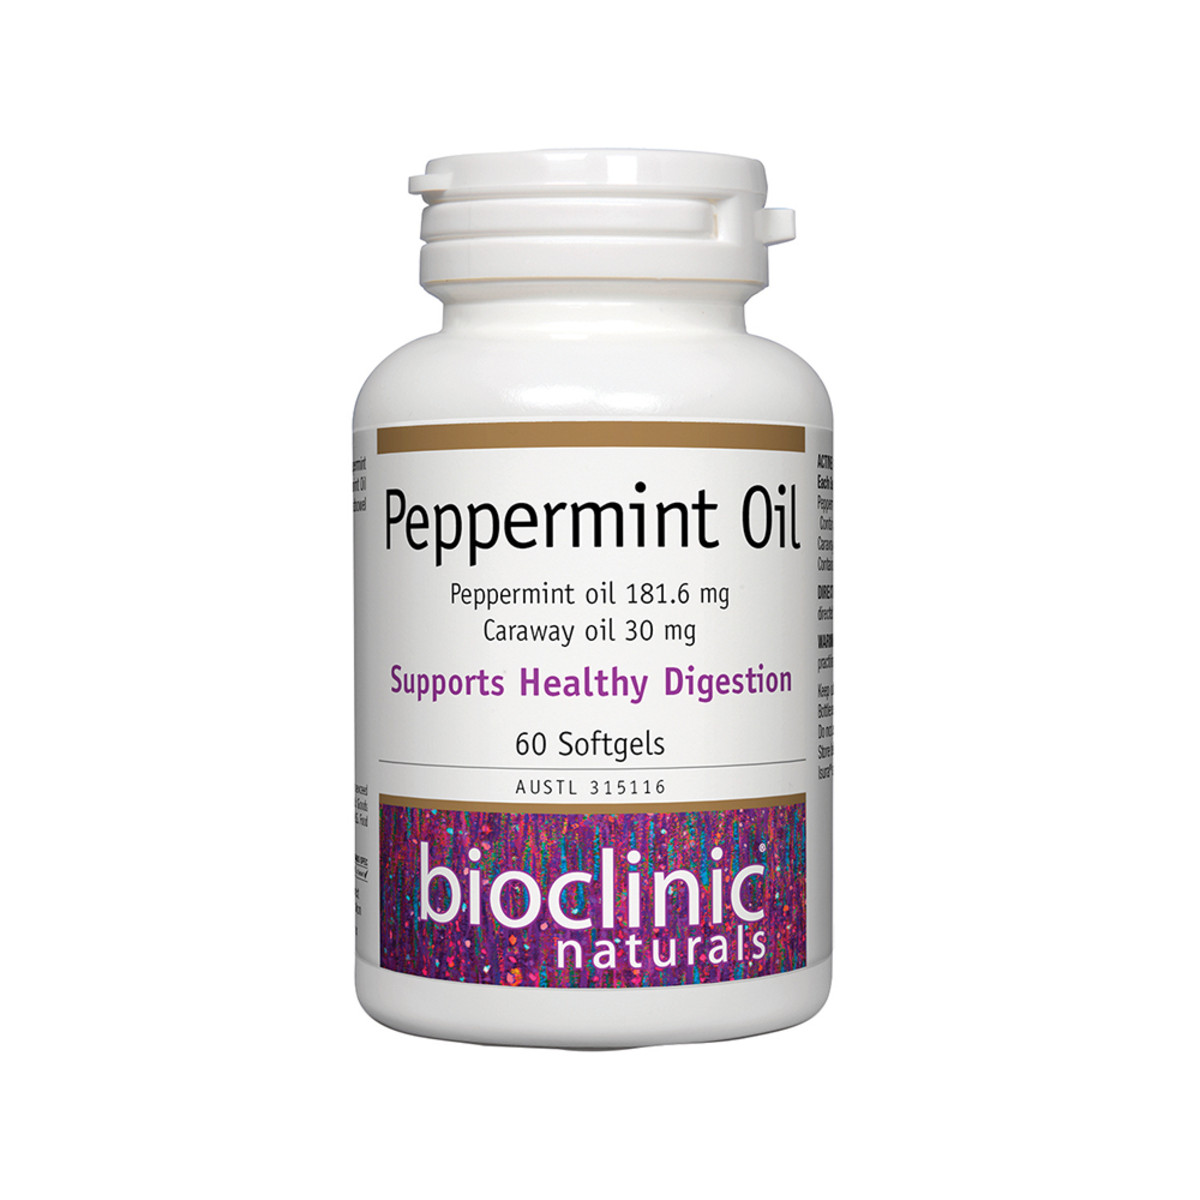 BIOCLINIC NATURALS - Peppermint Oil